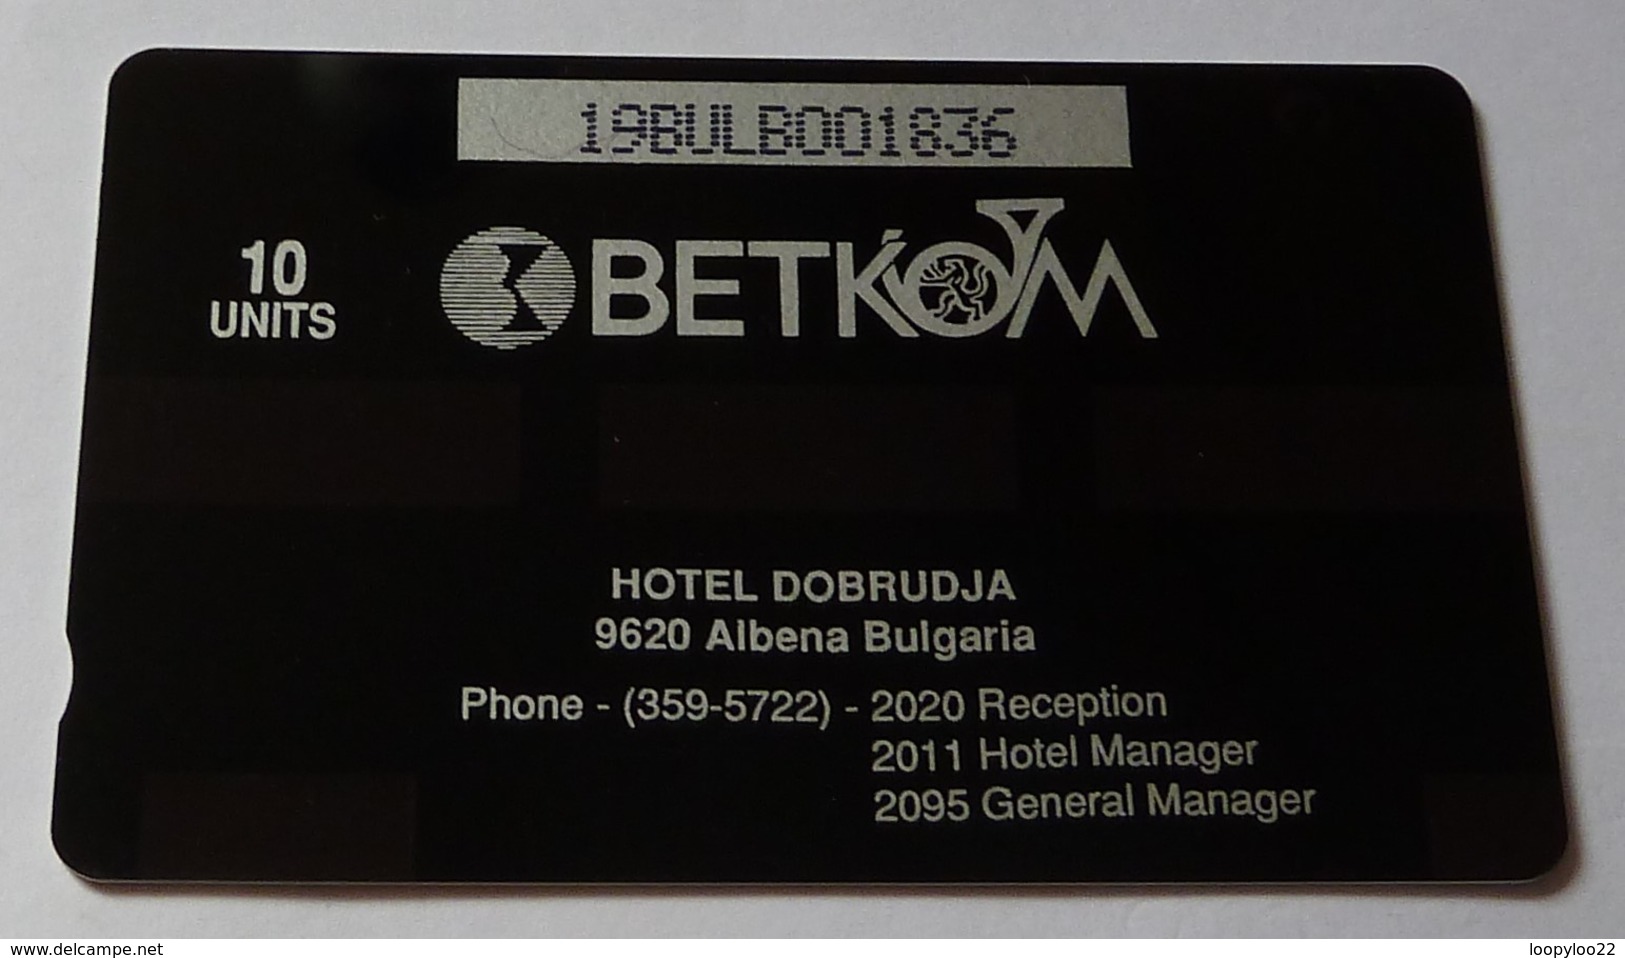 BULGARIA - GPT - Betkom - B23 - Hotel Dobrudja - 19BULB - 1892ex - 10 Units - Mint - Bulgaria